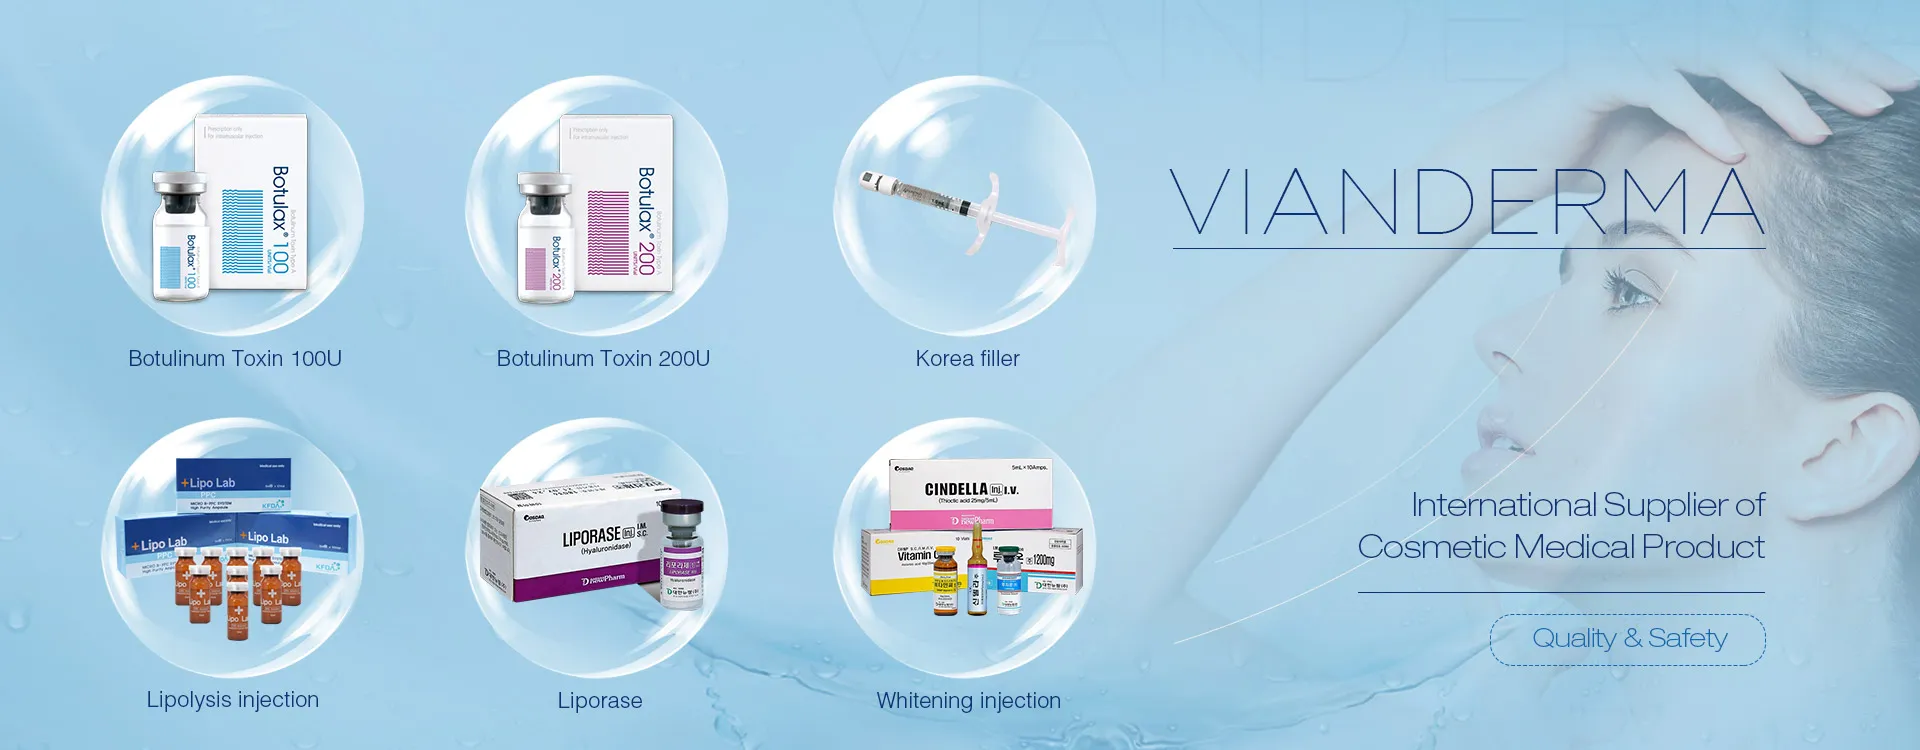 VIANDERMA - Fornitore internazionale di prodotti medici cosmetici